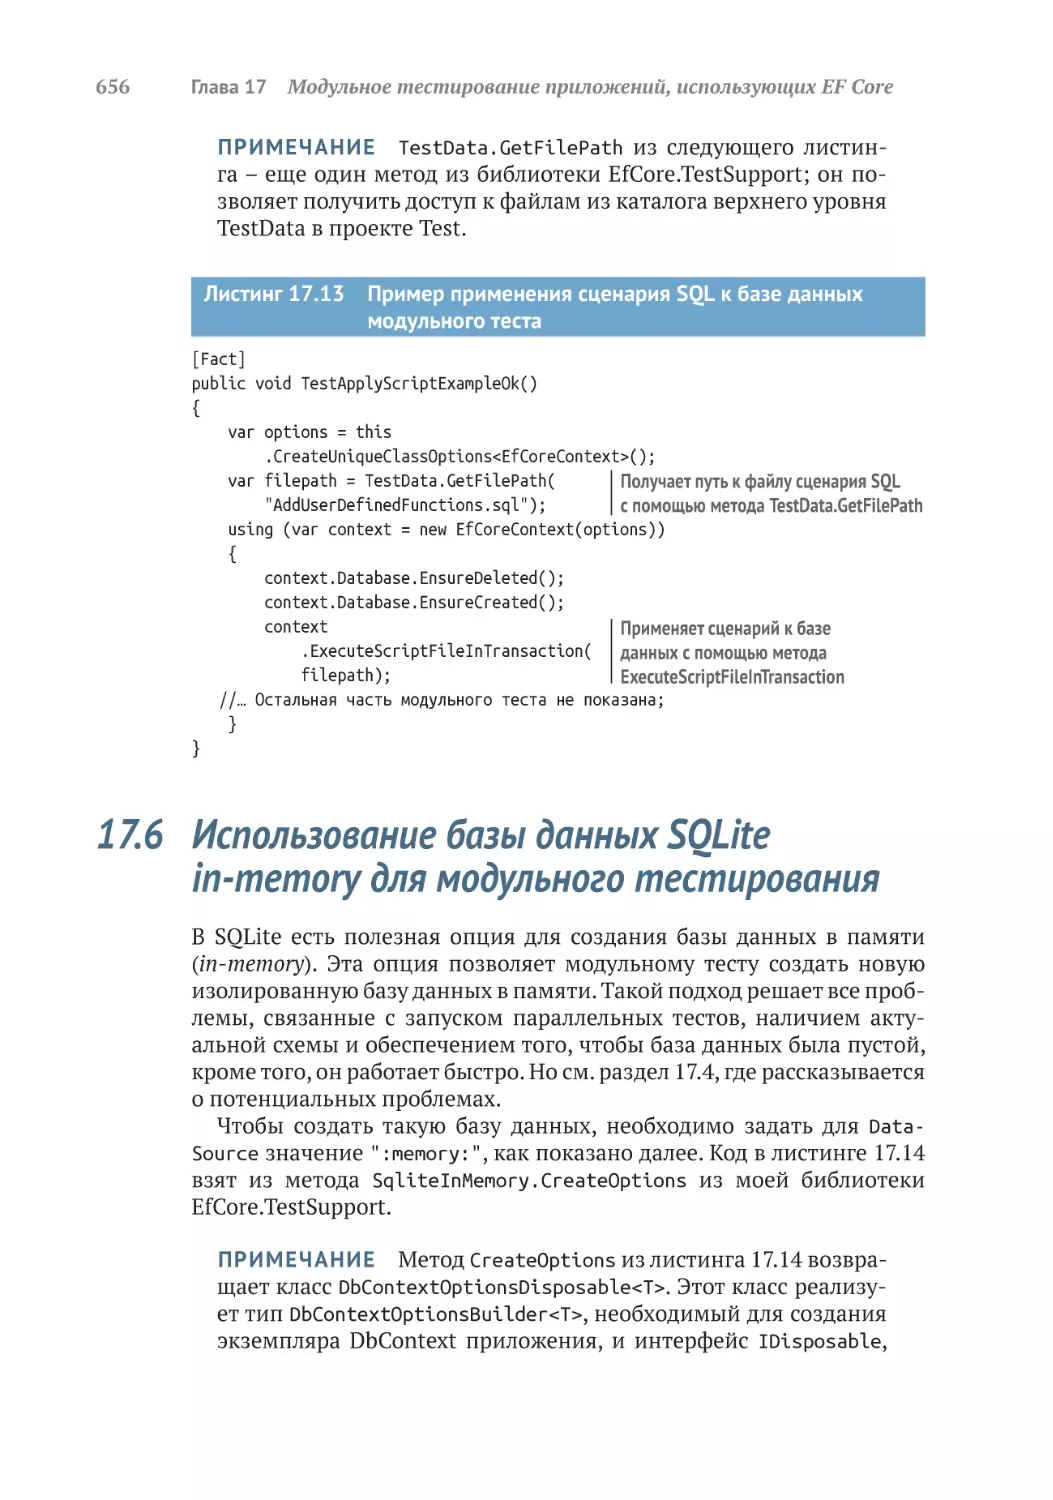 17.6	Использование базы данных SQLite in-memory для модульного тестирования